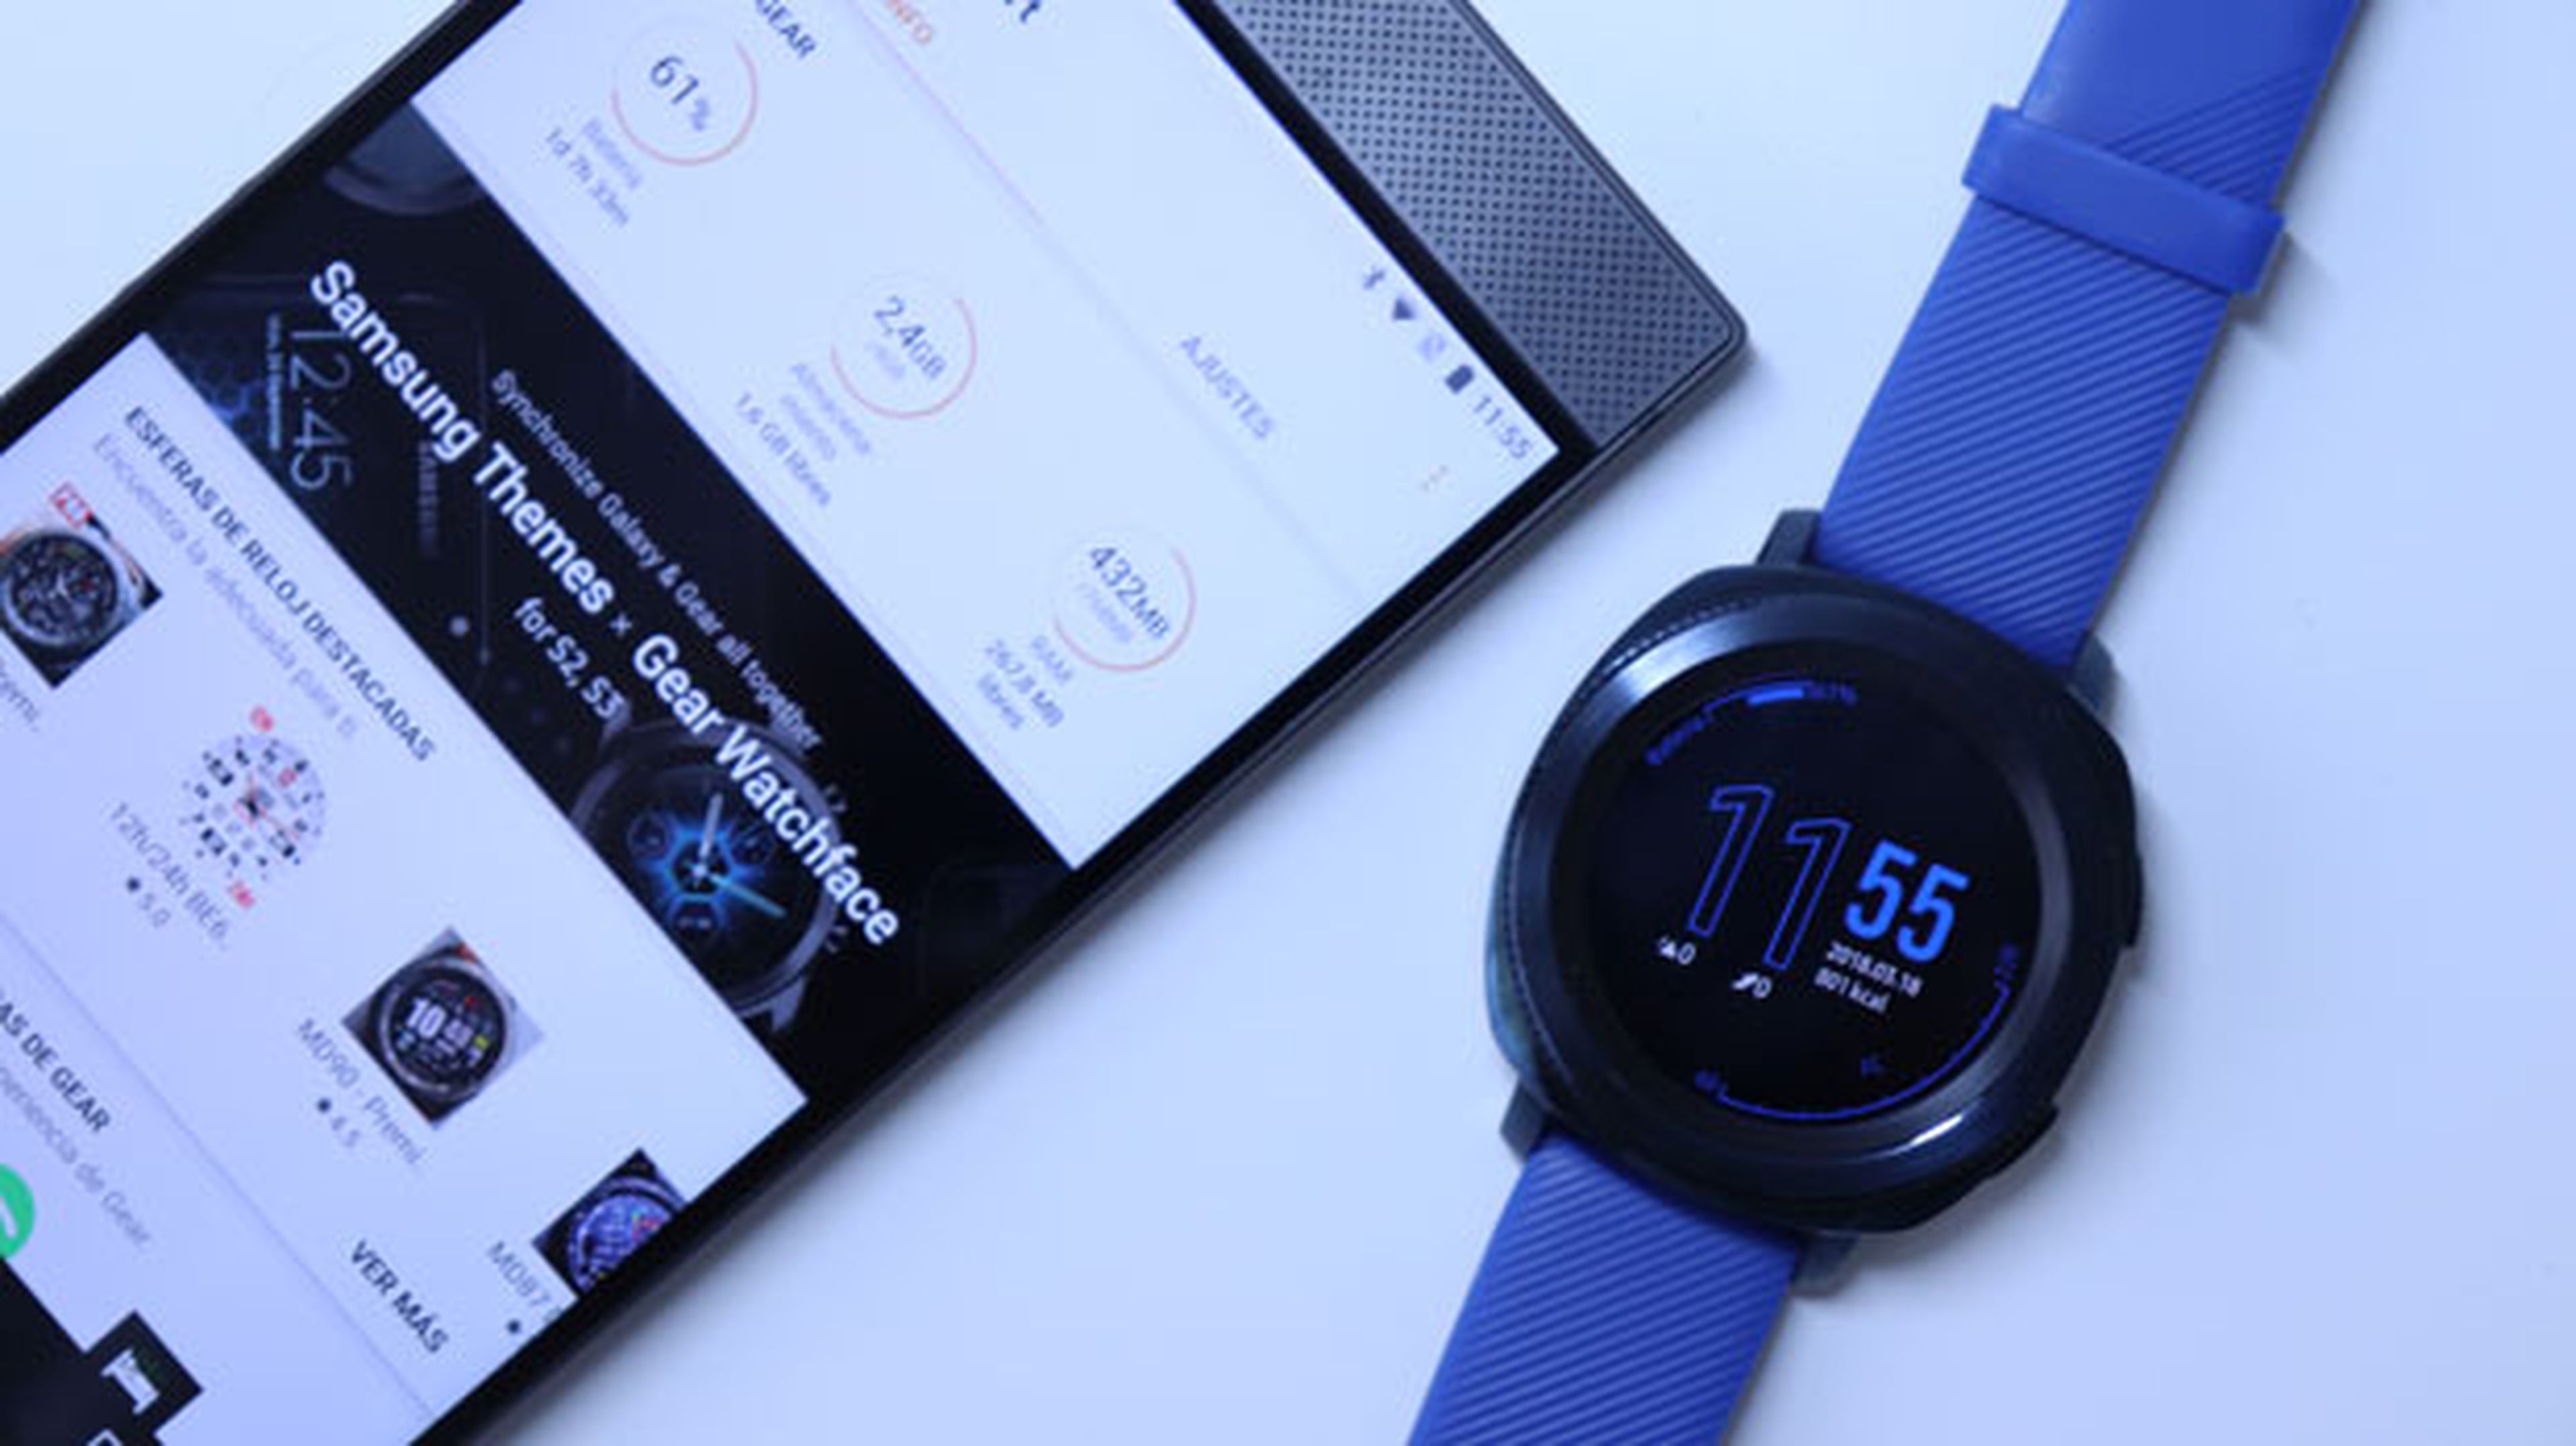 El reloj Gear Sport conectado a un móvil Android